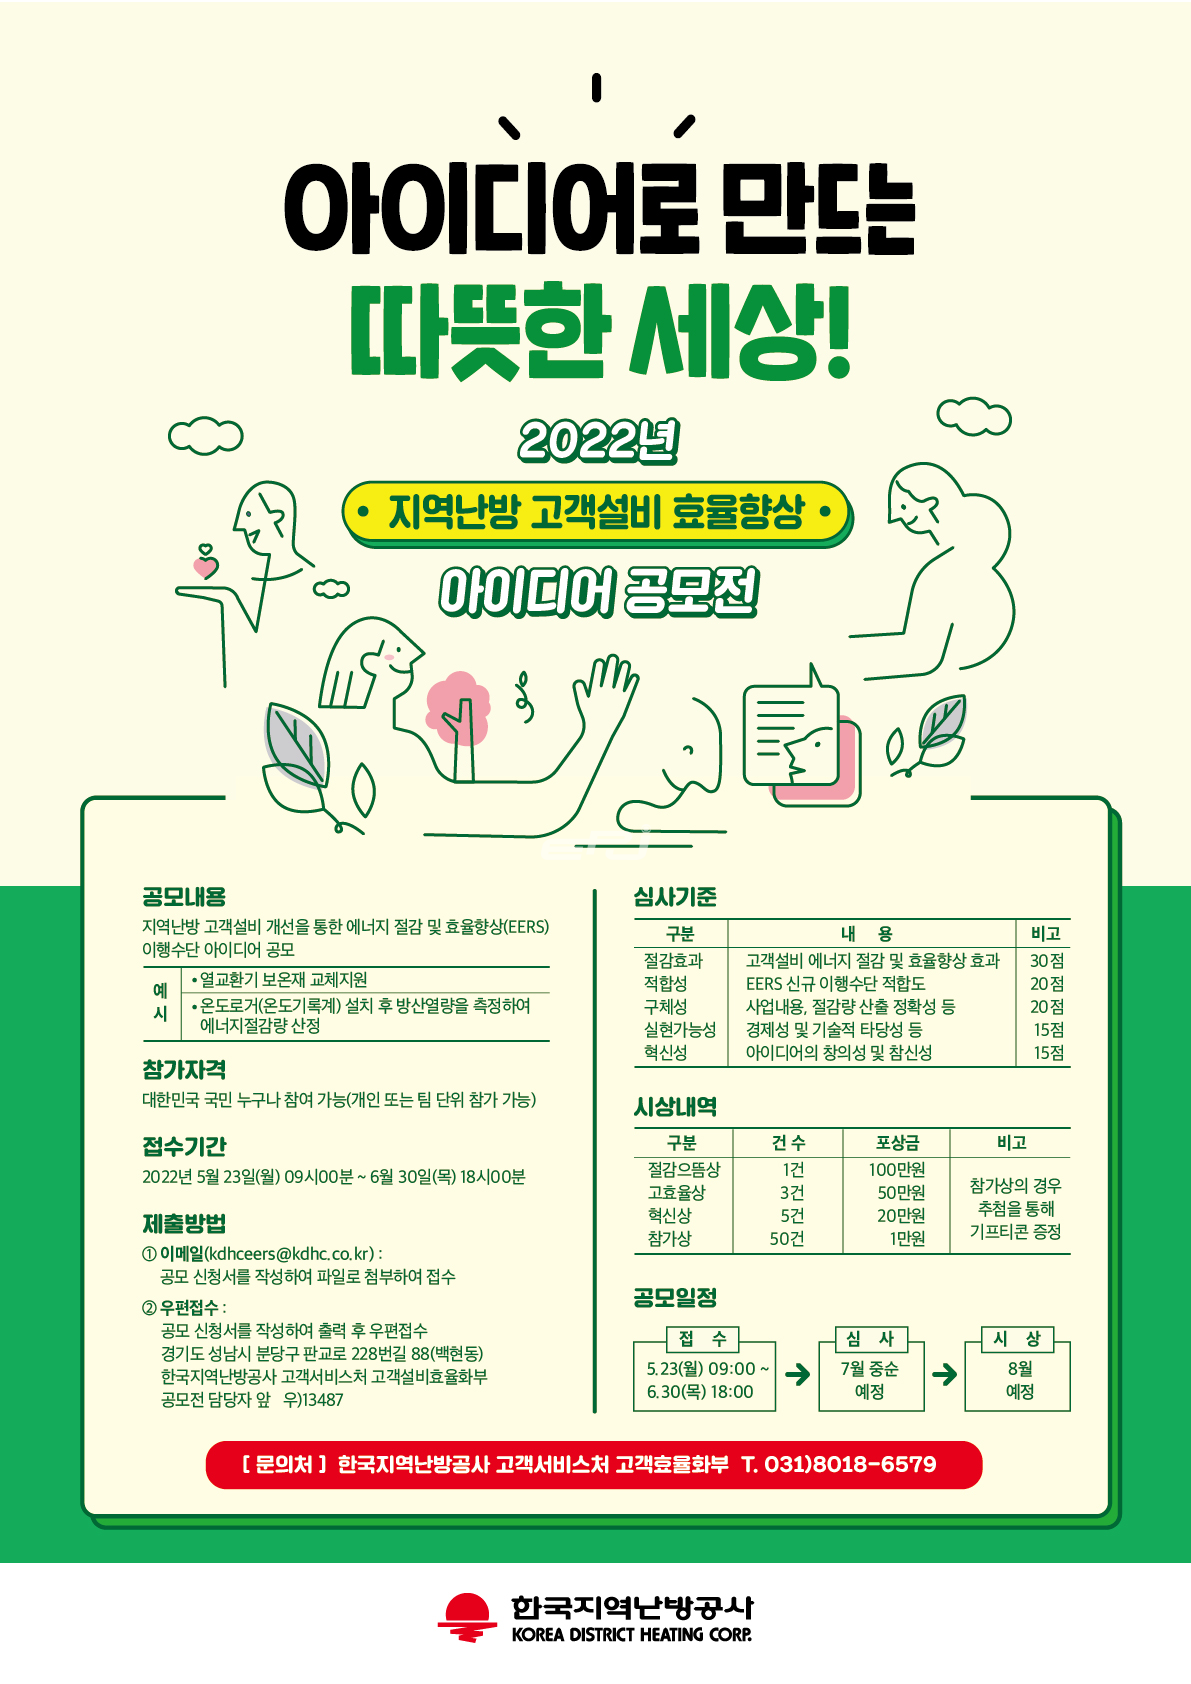 한국지역난방공사 에너지 효율 향상 아이디어 공모 포스터